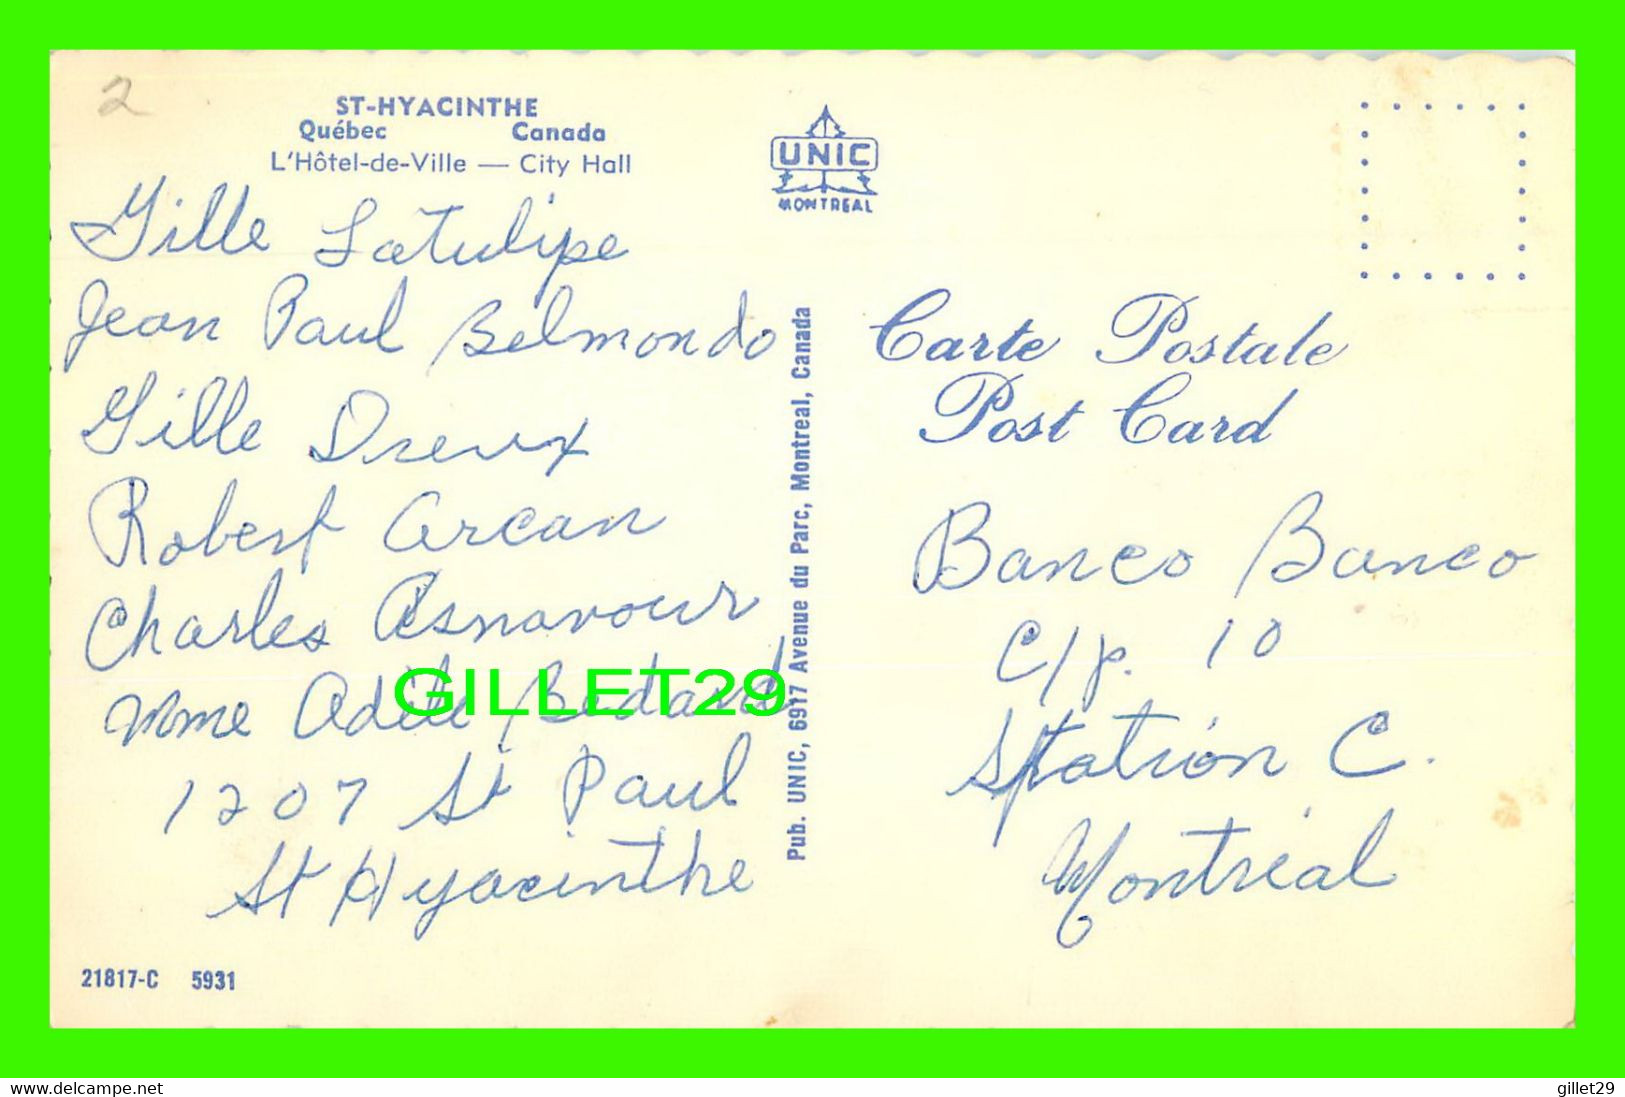 ST-HYACINTHE, QUÉBEC - L'HÔTEL DE VILLE - CITY HALL UNIC - WRITTEN - ANIMÉE DE VIEILLE VOITURES - DENTELÉE - - St. Hyacinthe